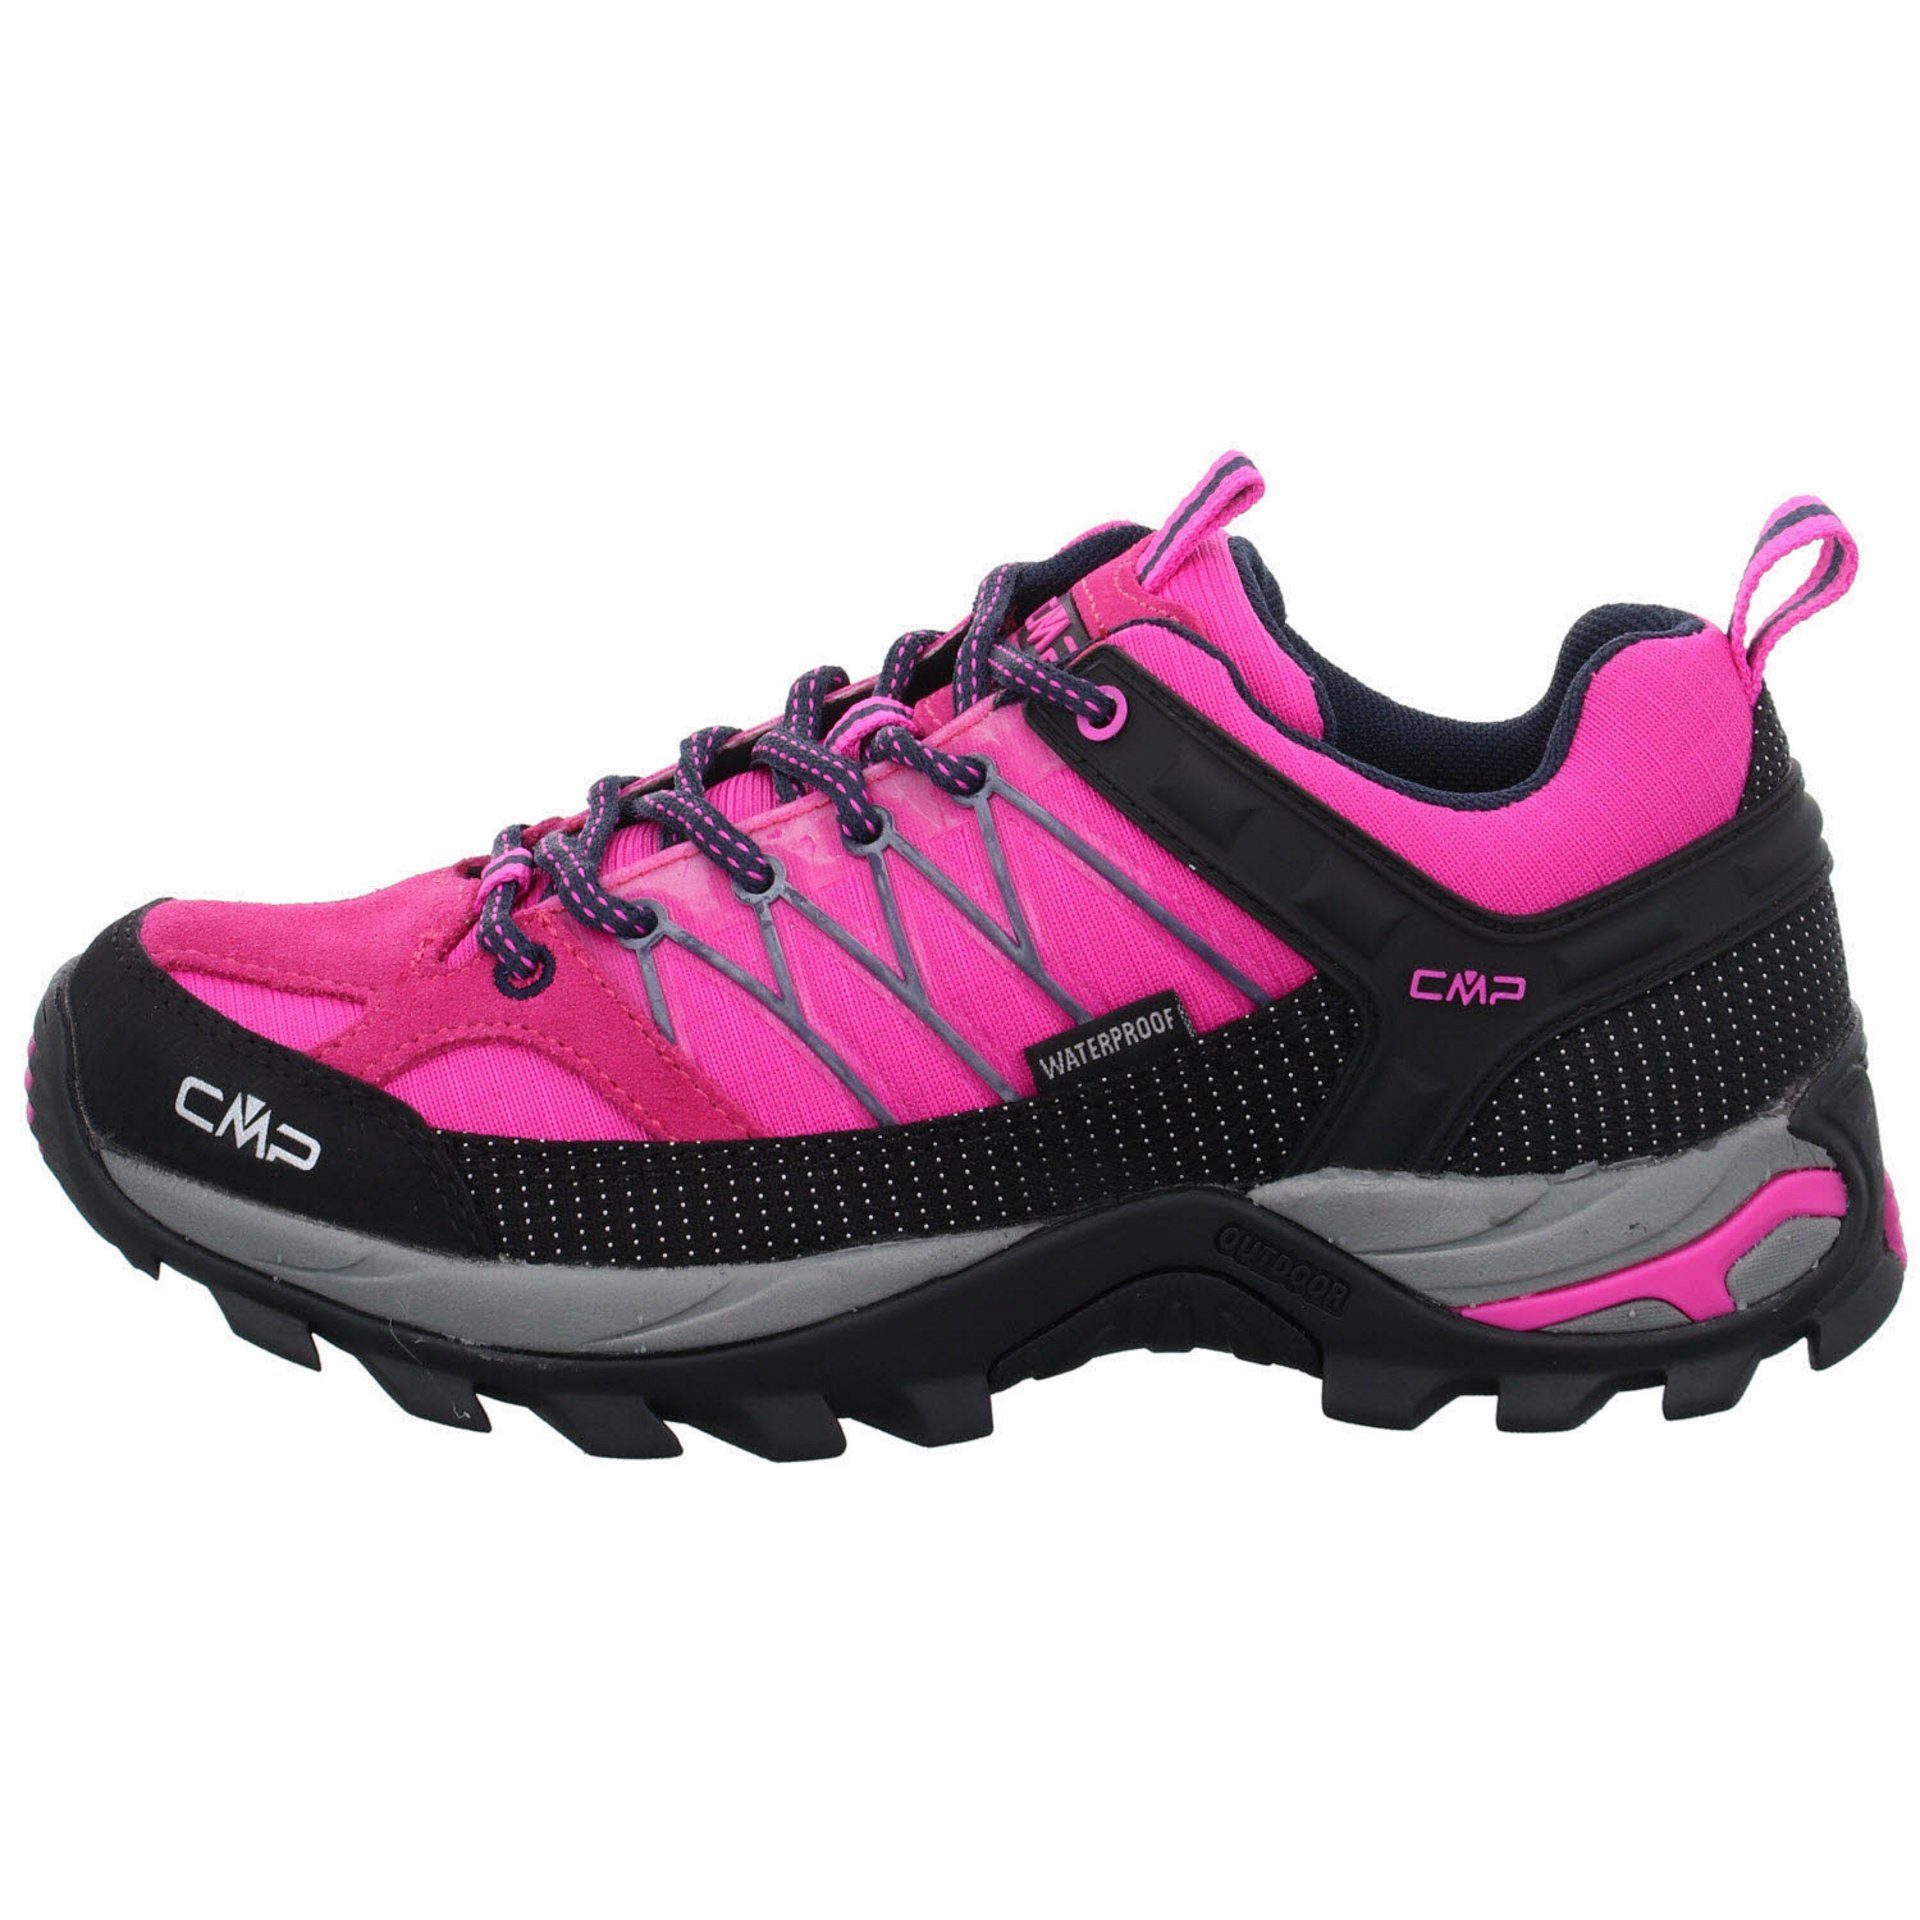 (03201886) Rigel Outdoorschuh Schuhe fluo-b.blue Damen Low pink Outdoorschuh Outdoor CMP Leder-/Textilkombination